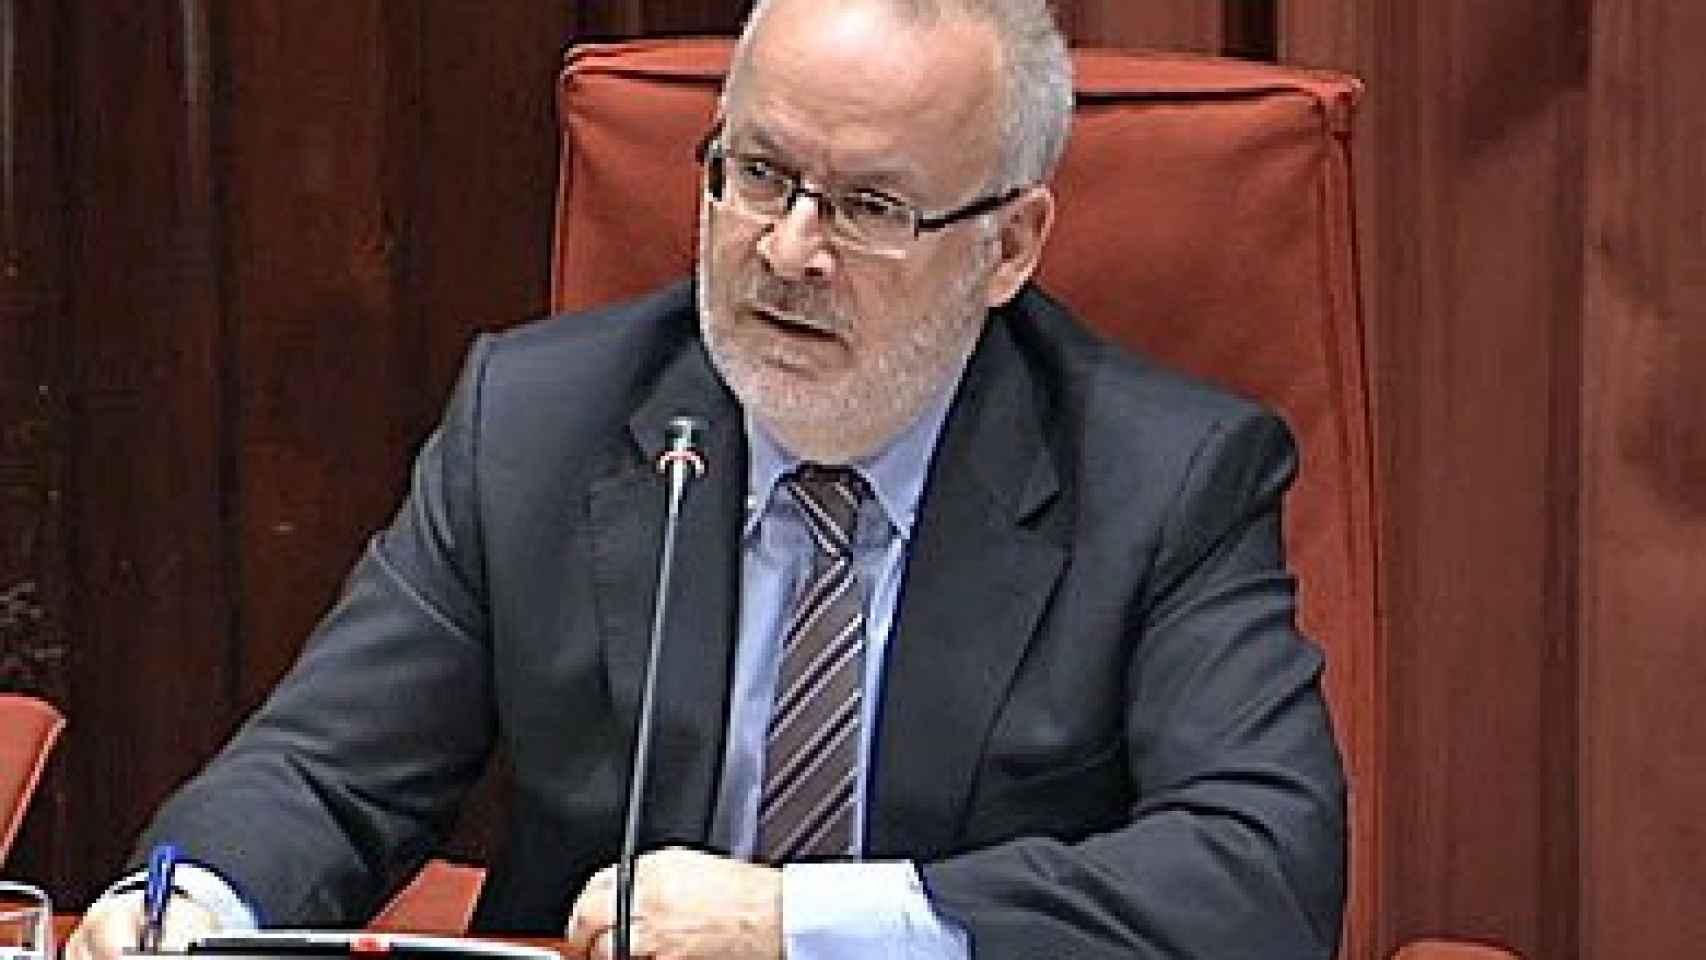 El ahora vicepresidente del Comité de Gobierno de la Corporación Catalana de Medios Audiovisuales (CCMA), Brauli Duart, que ha desatado una guerra por el control de los medios públicos como TV3